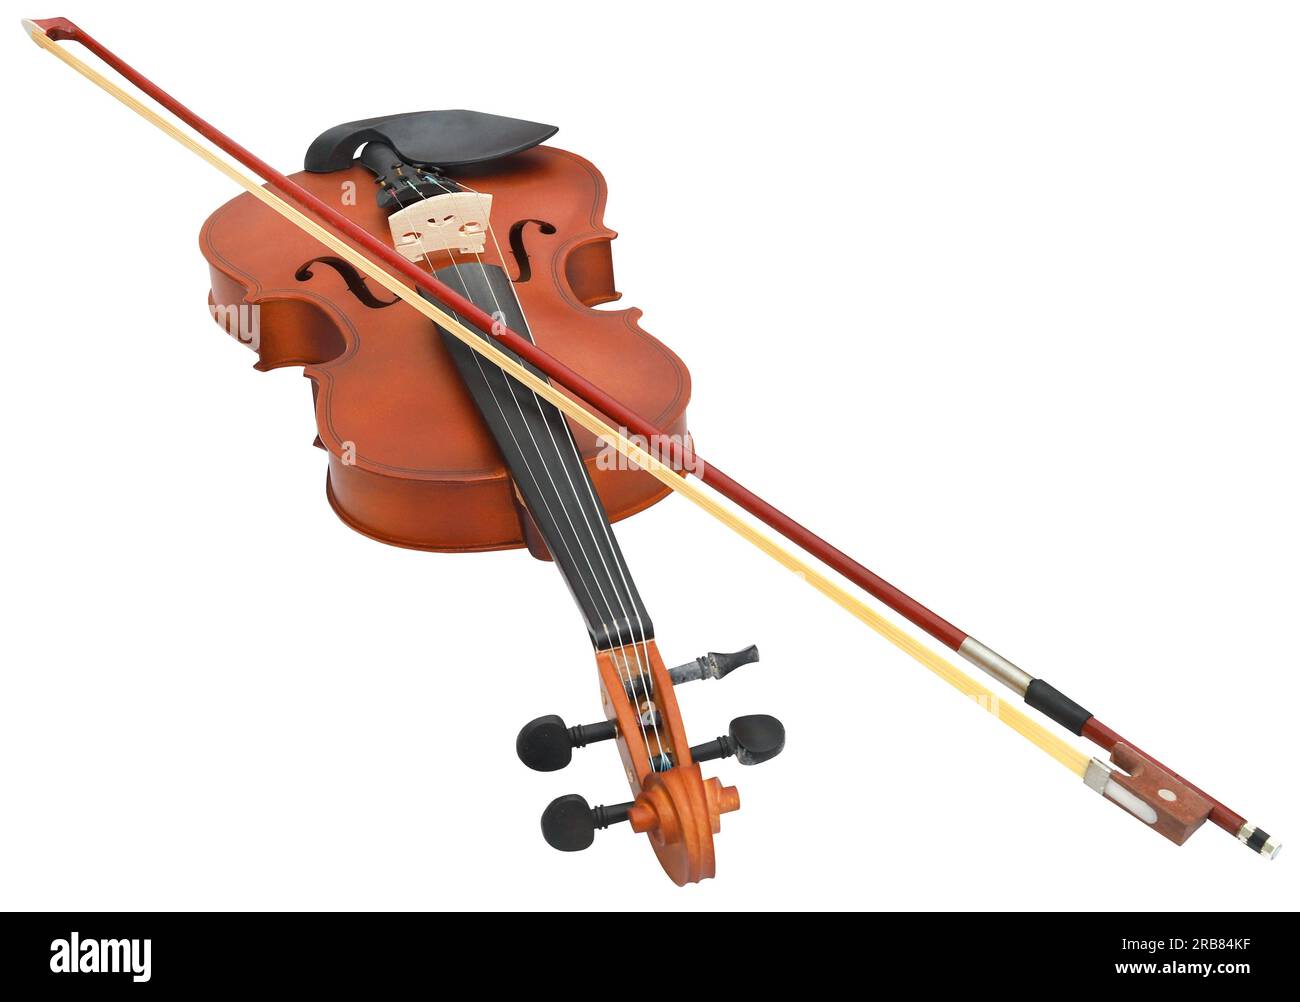 Instrument de musique violon en bois isolé Banque D'Images